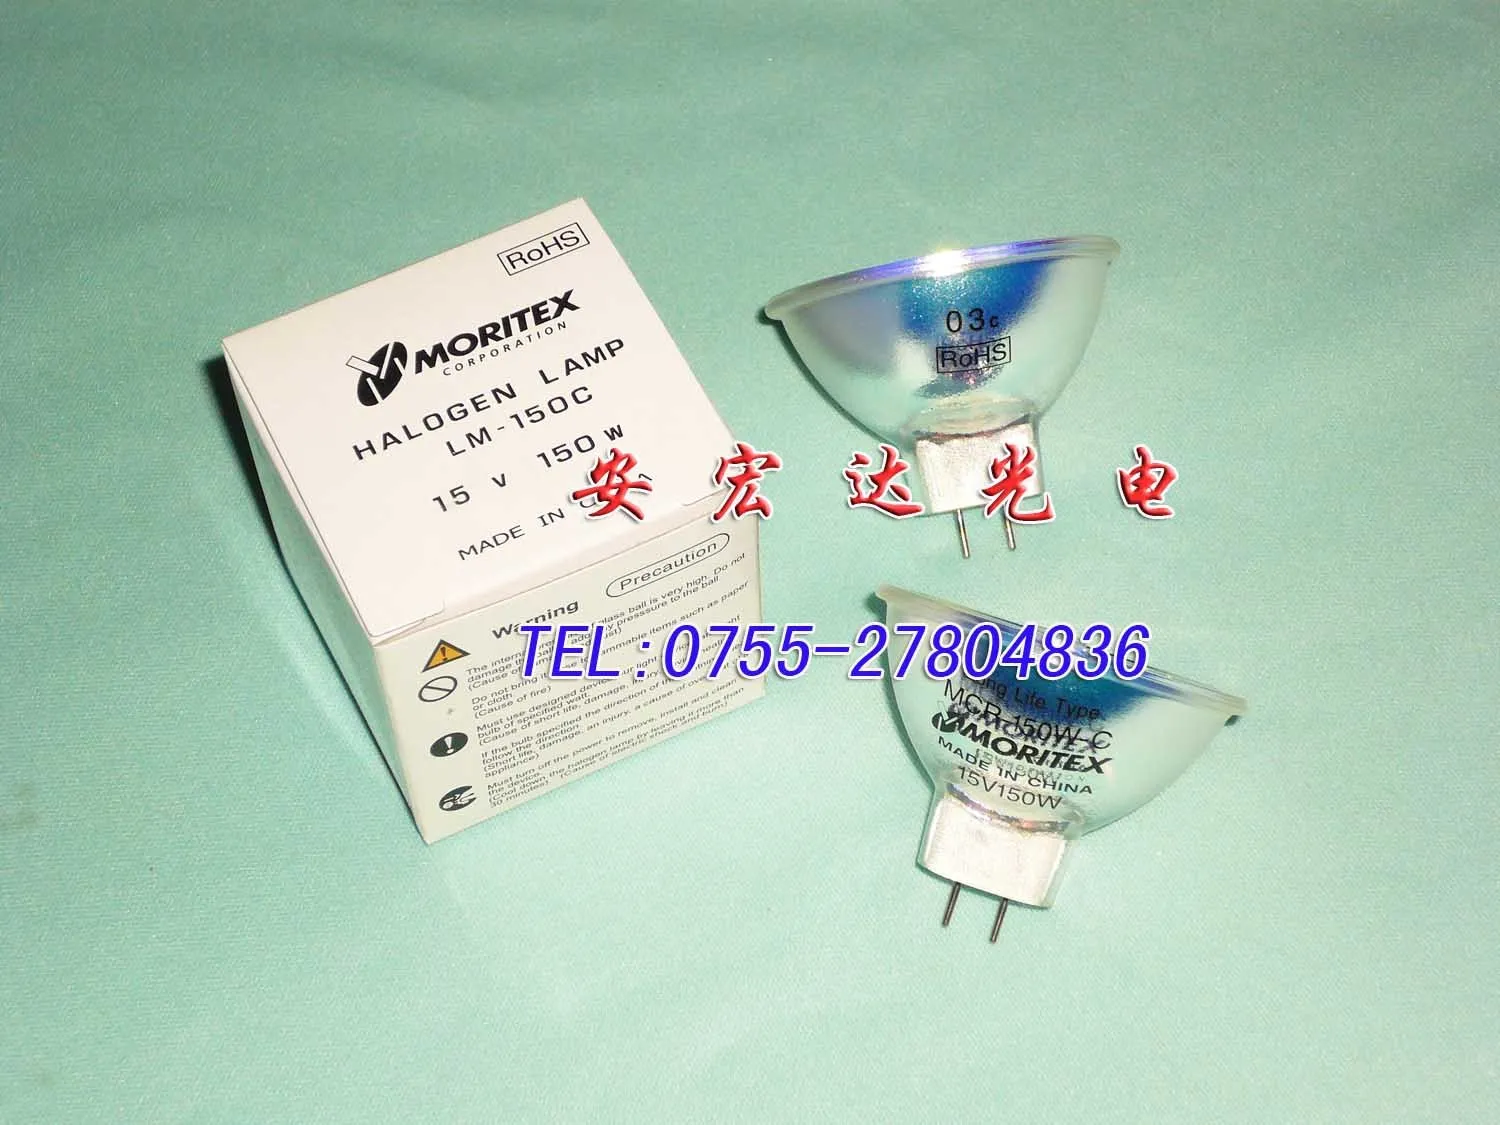 Moritex Lm-150 15v150w чашечные лампы УФ лампы